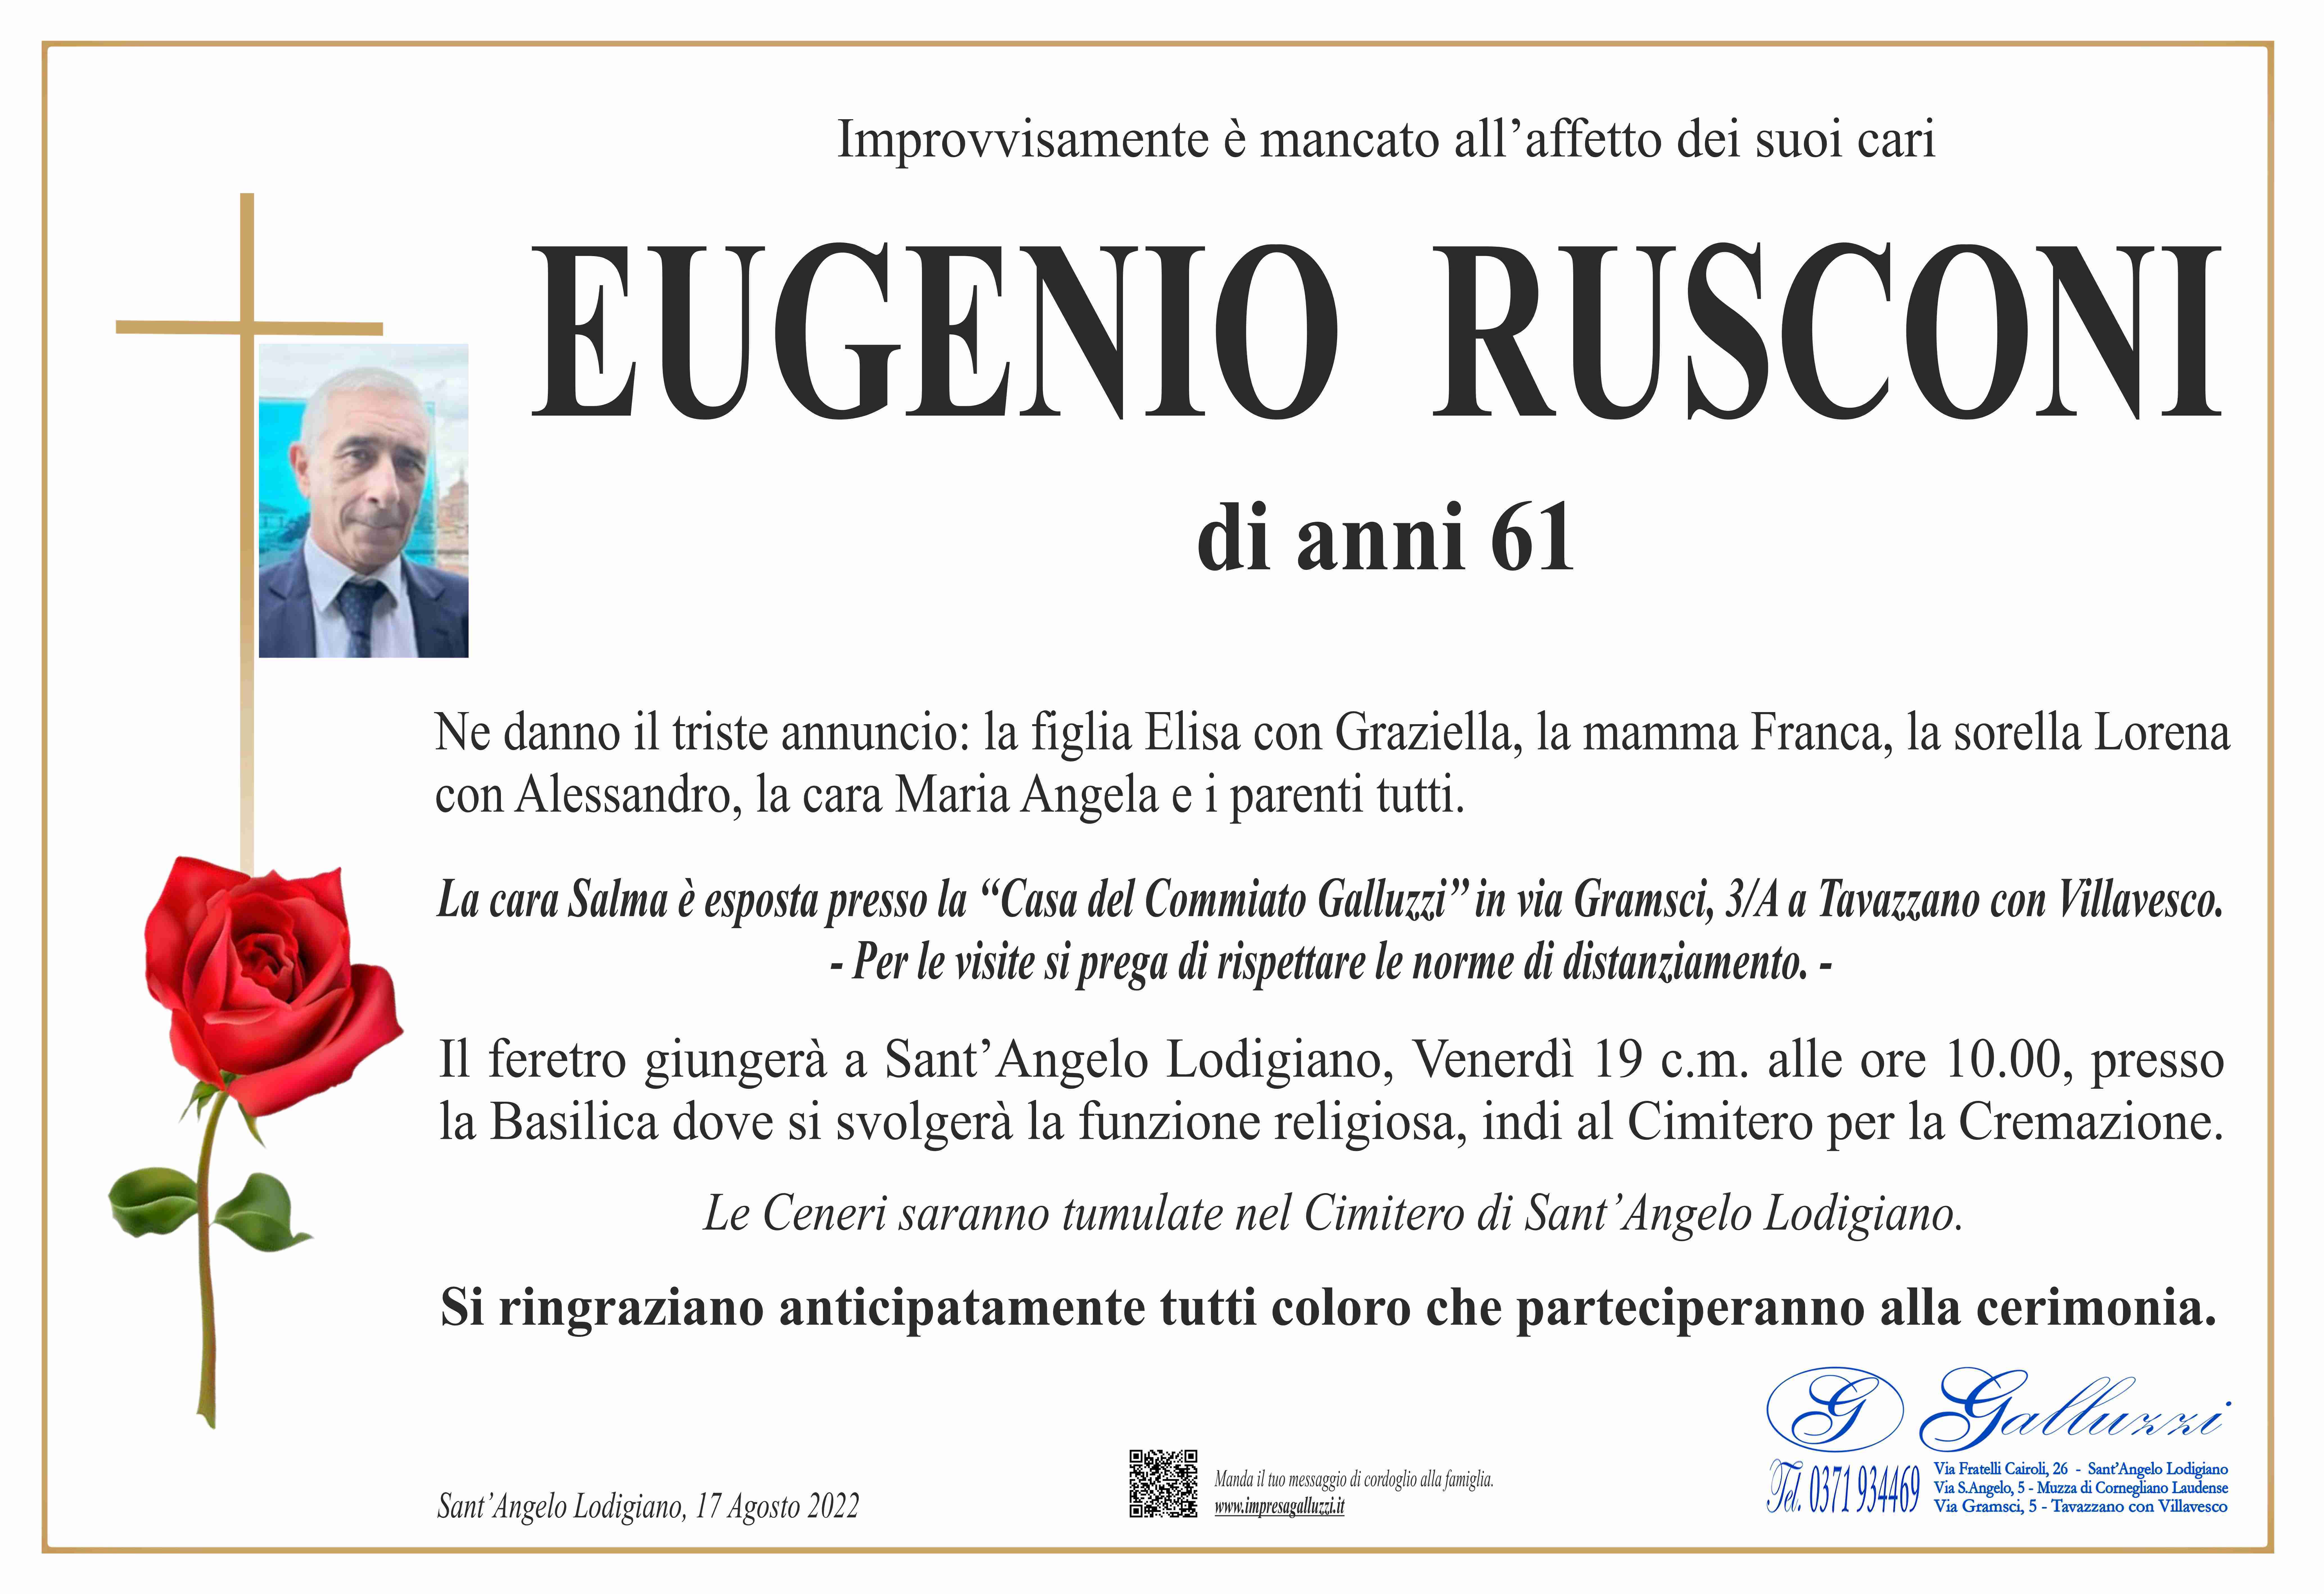 Eugenio Rusconi